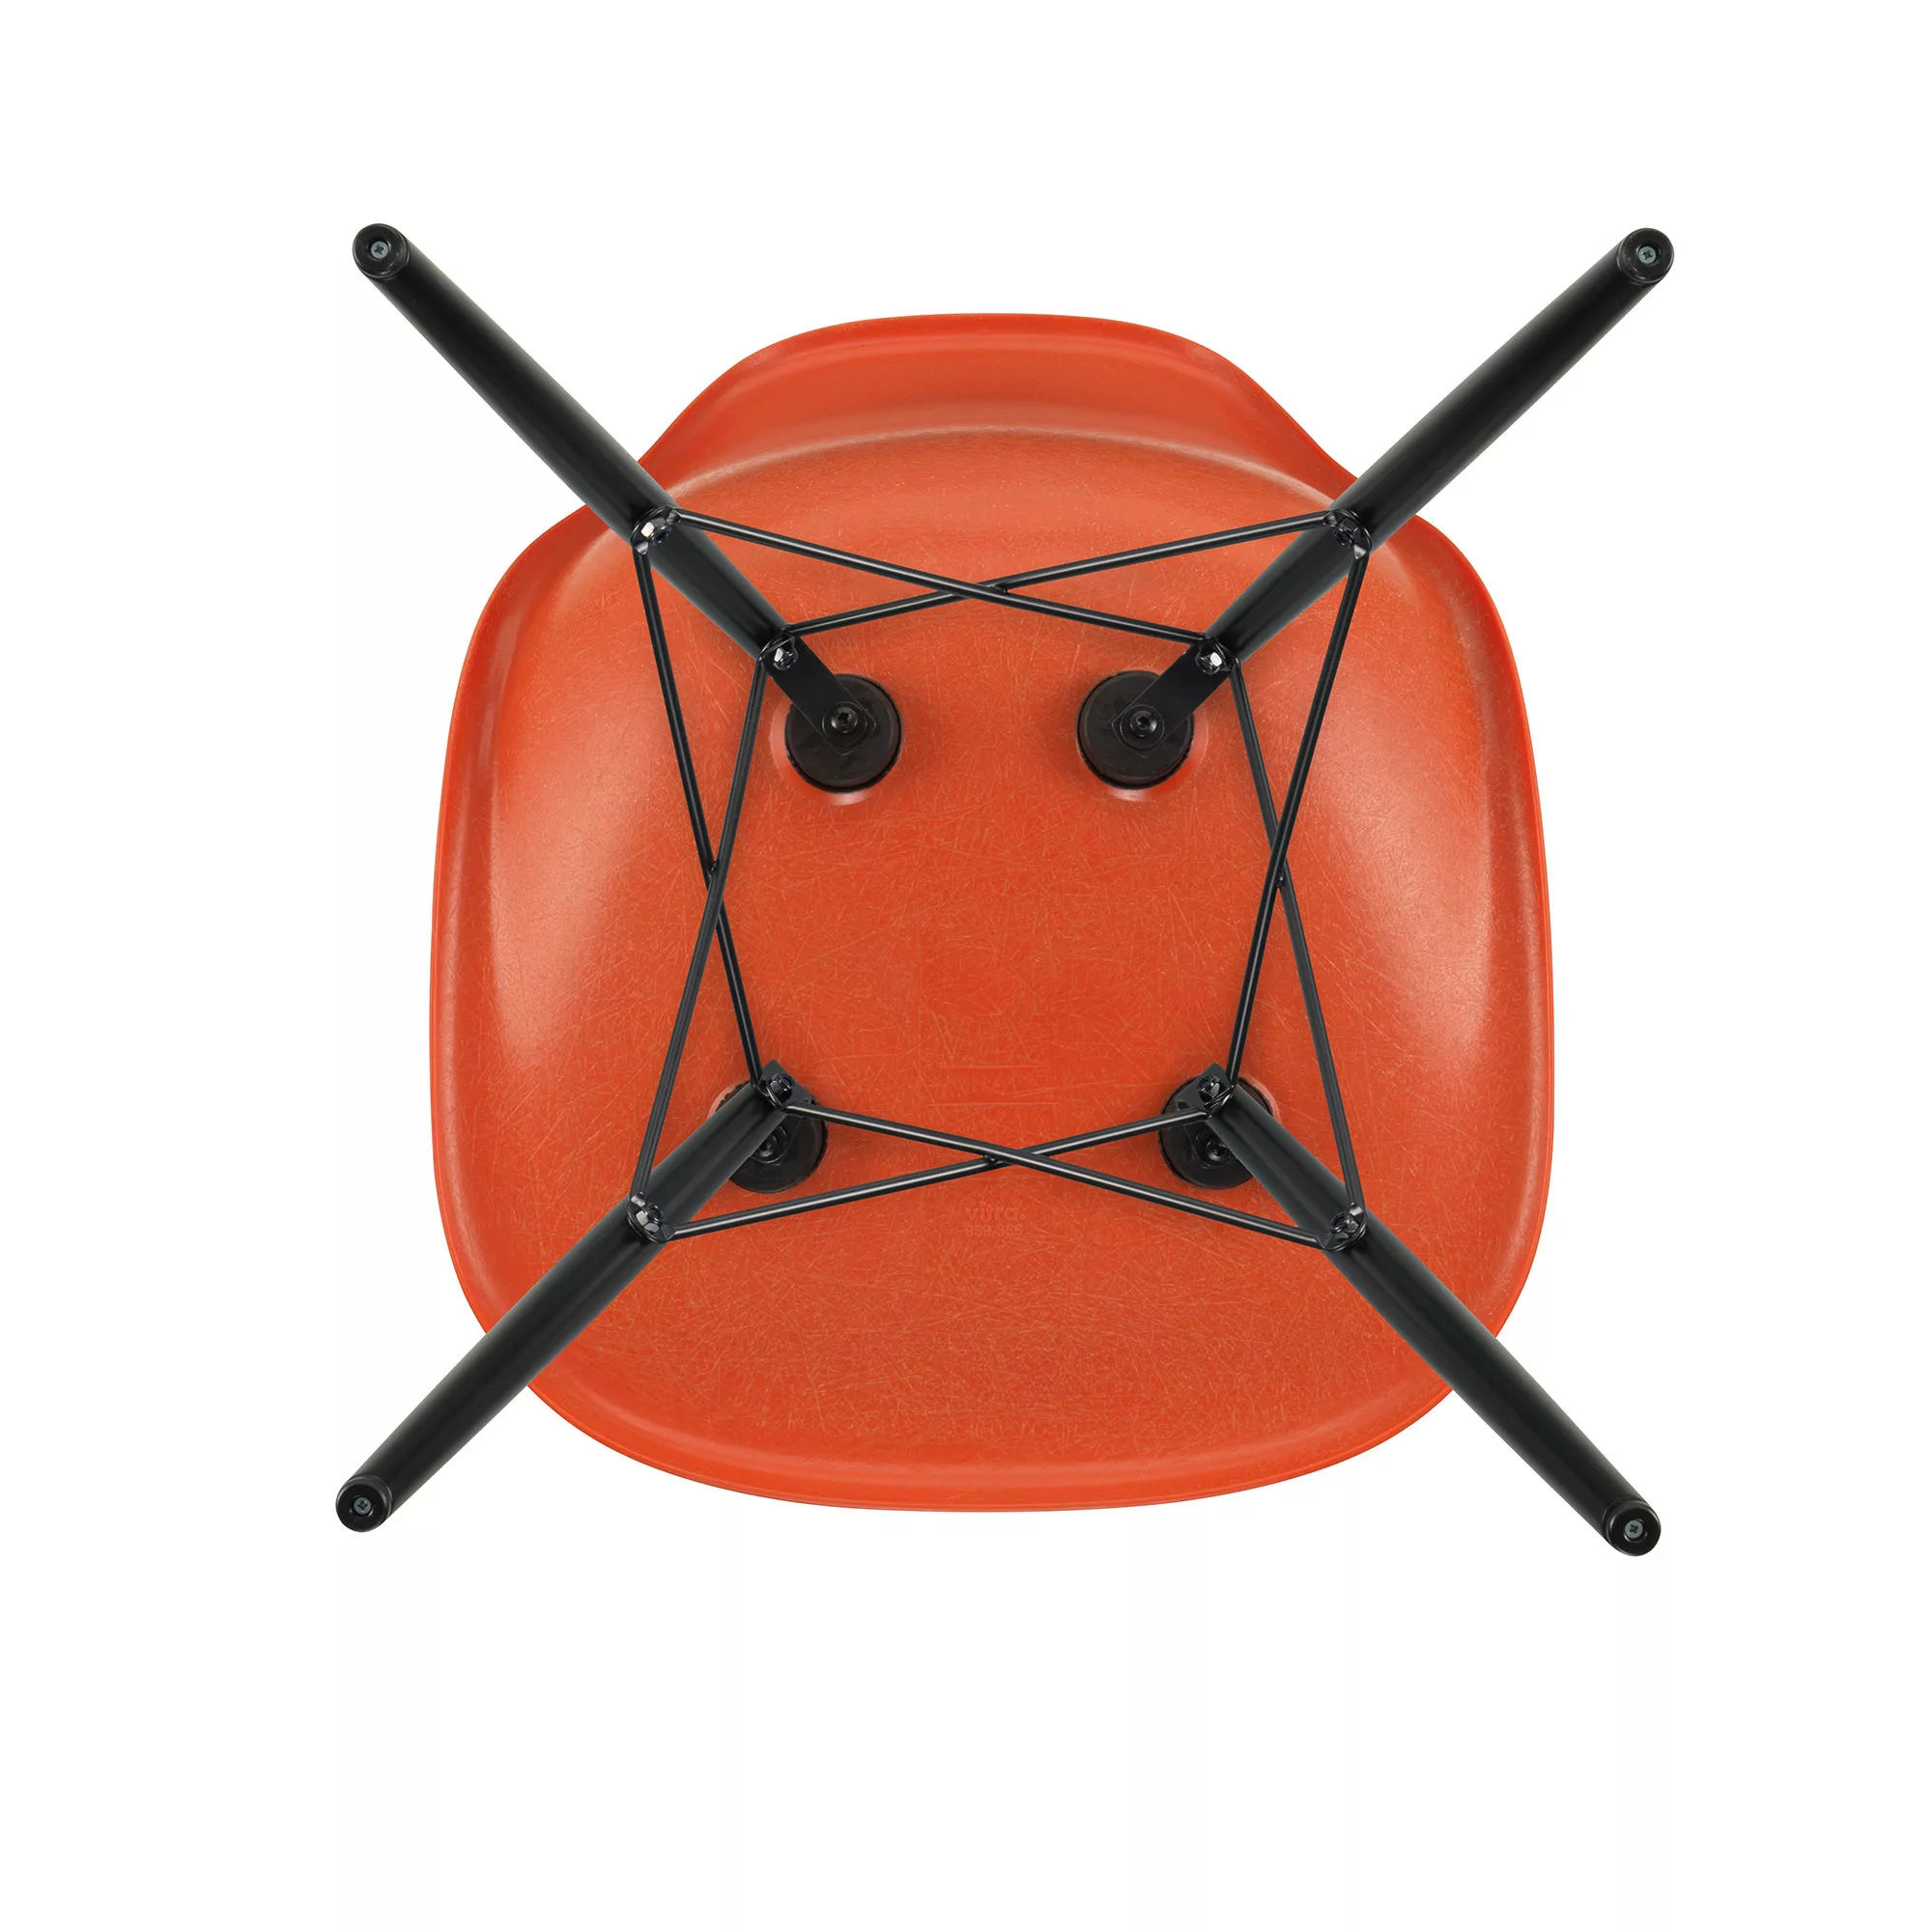 Vitra - Eames Fiberglass Side Chair DSW Ahorn schwarz - rot orange/Sitzscha günstig online kaufen